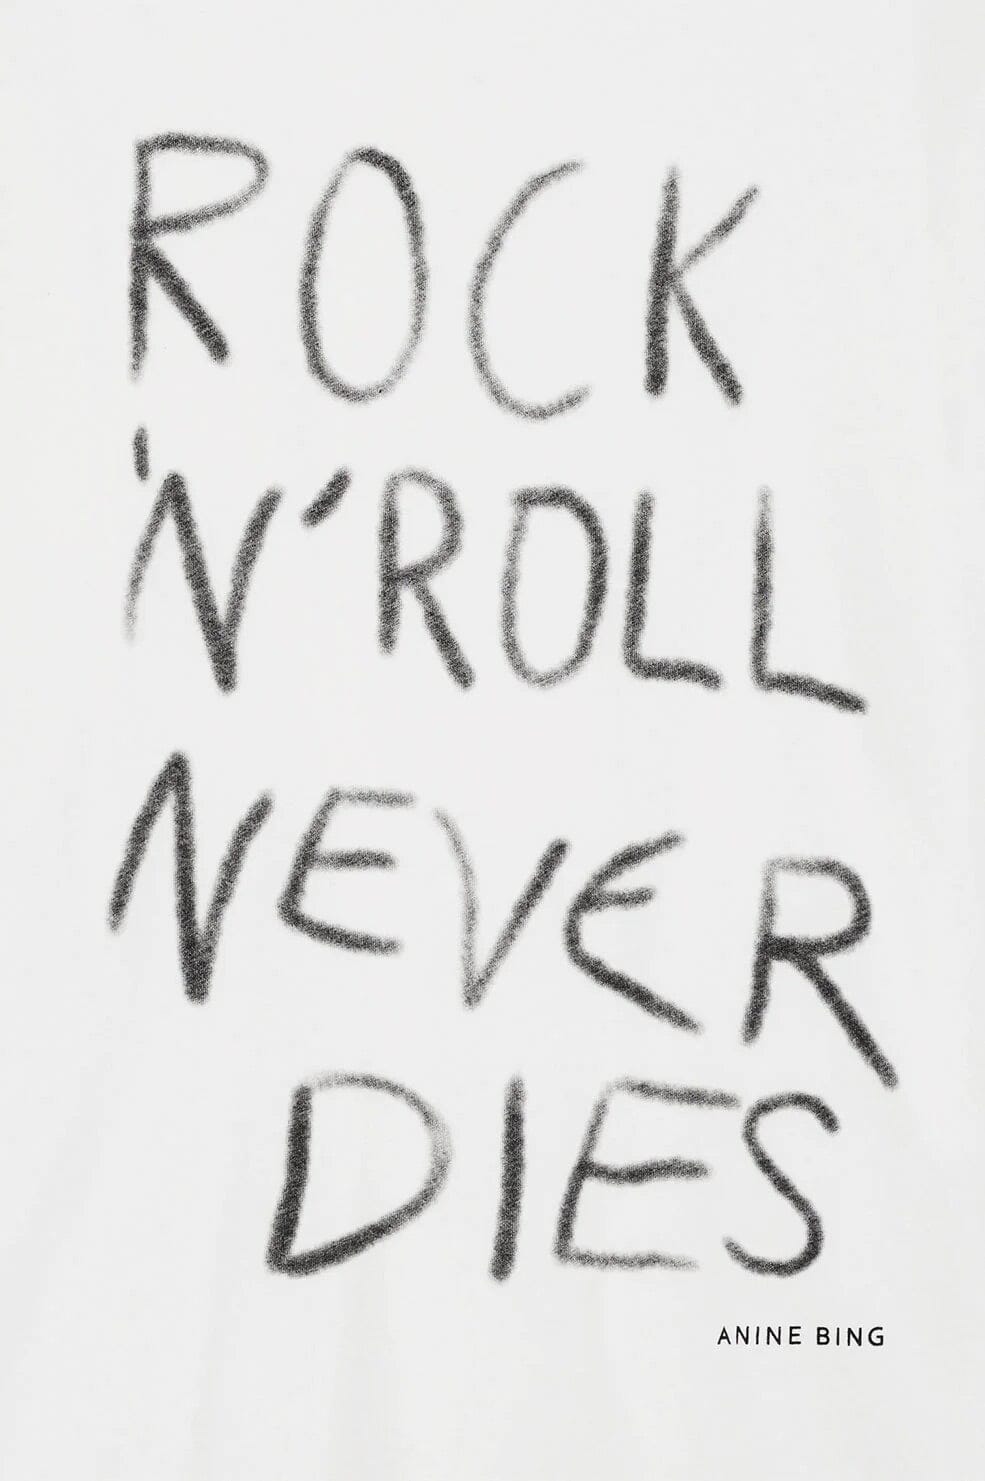 Anine Bing Walker Tee Rock N Roll Ivory T-shirt